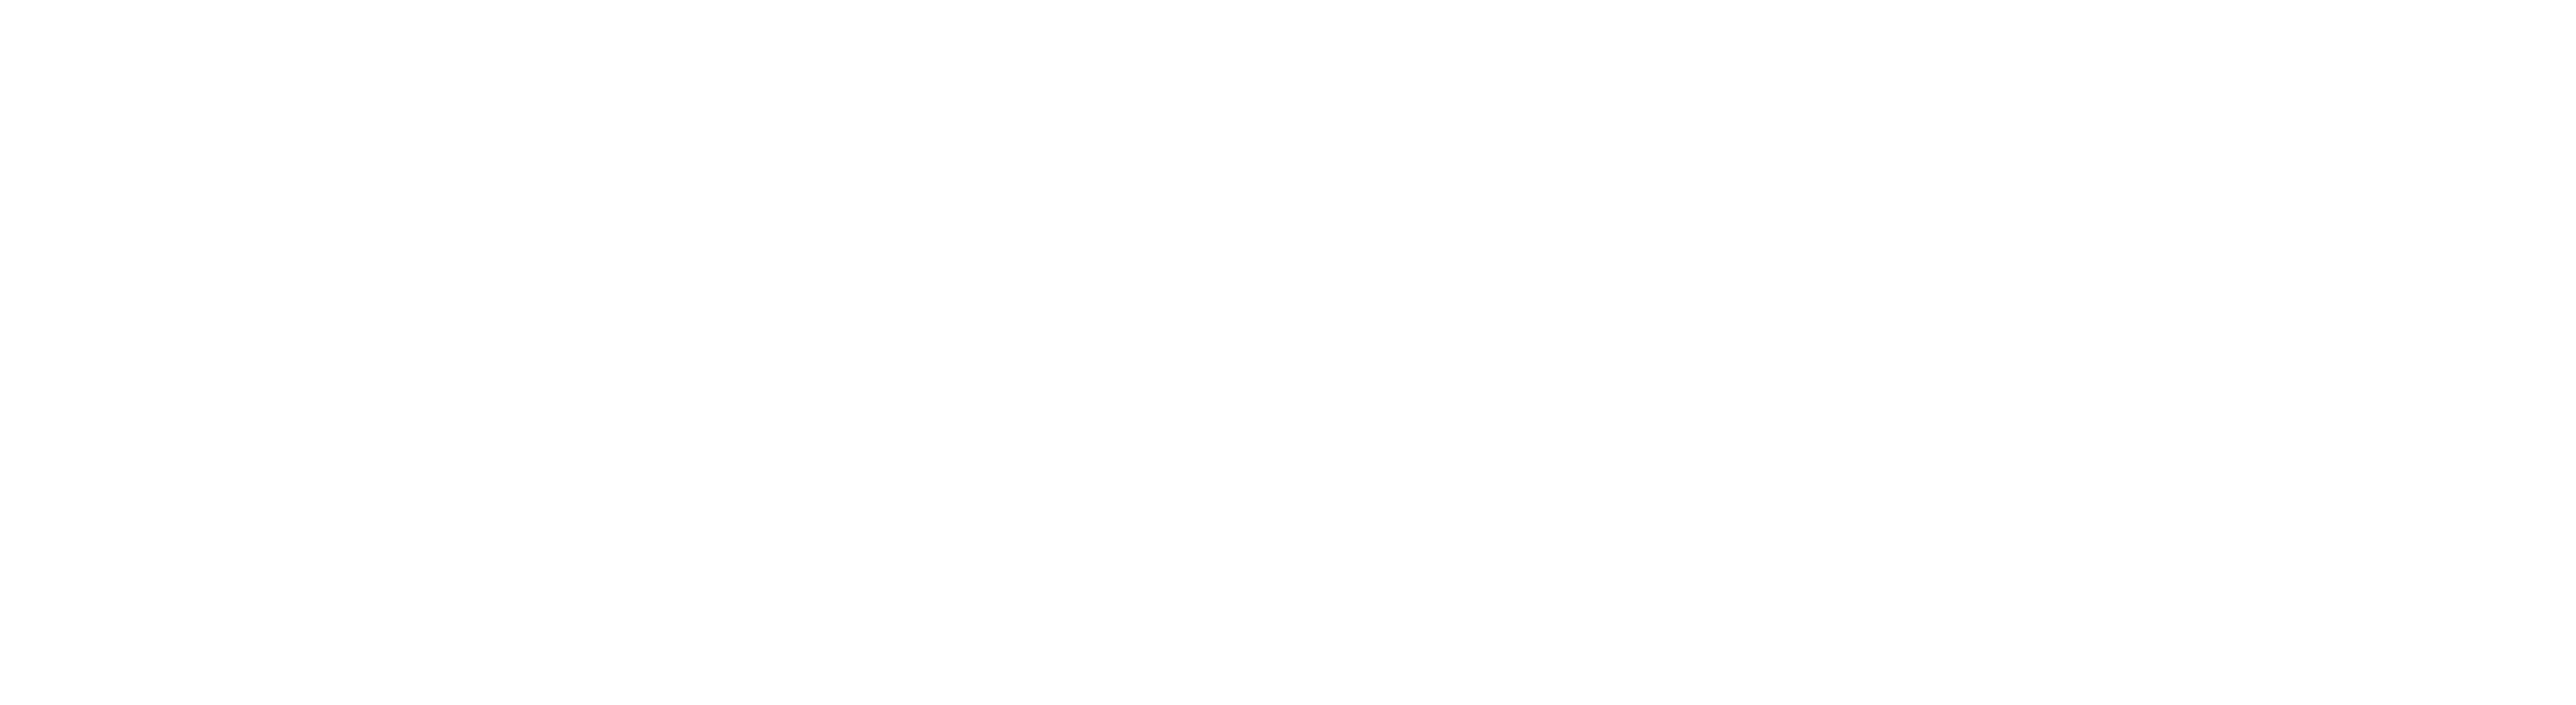 Brainsquare logo